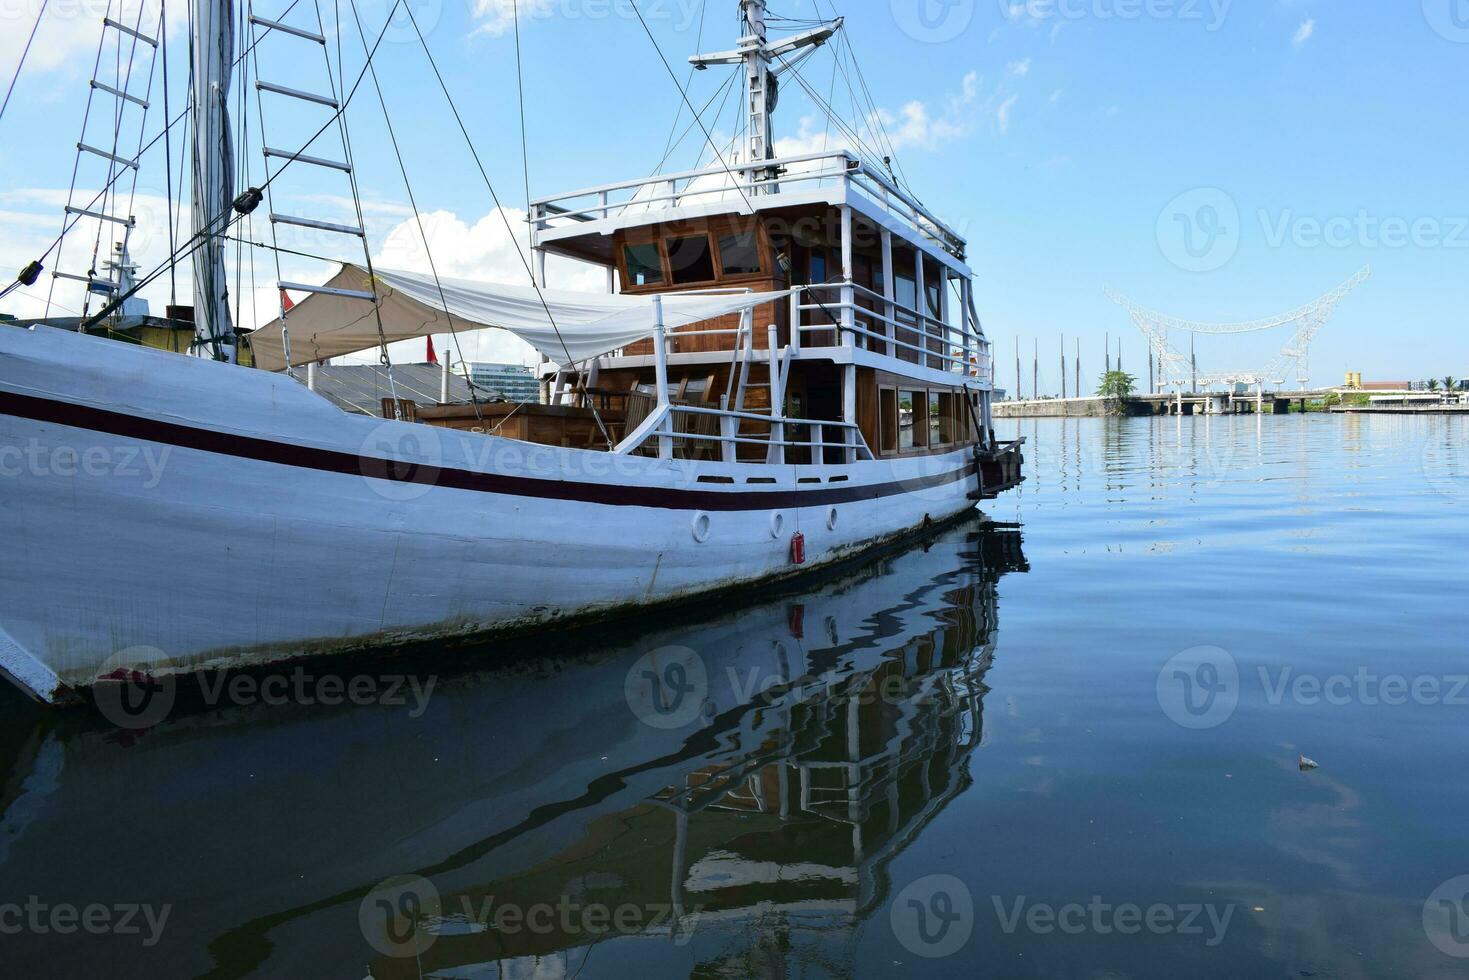 Indonesisch traditioneel phinisi schip. pinisi of phinisi is een traditioneel tweemaster Indonesisch het zeilen schip. deze boten zijn gemaakt naar zeil de wateren van de Indonesisch archipel foto